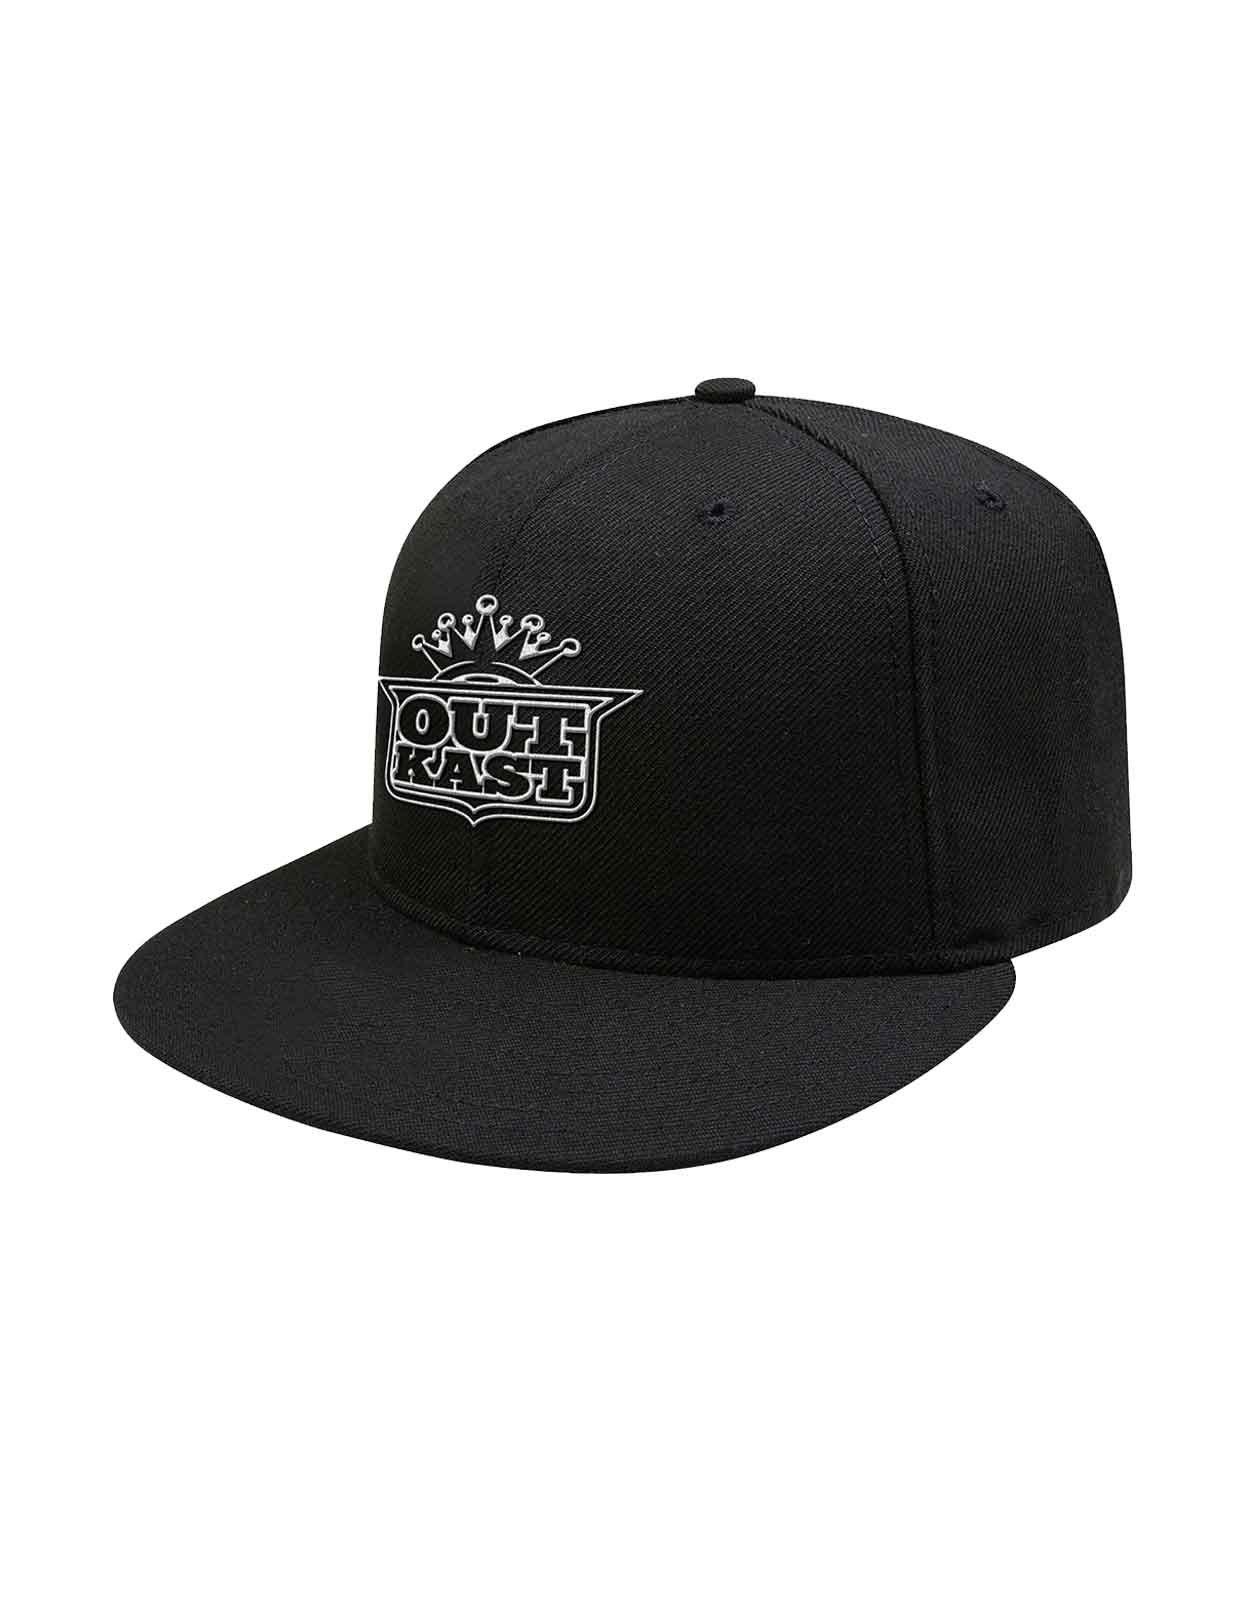 Бейсбольная кепка Snapback с логотипом Imperial Crown Outkast, черный мужская бейсболка с логотипом paul walker черная бейсболка с принтом 2019